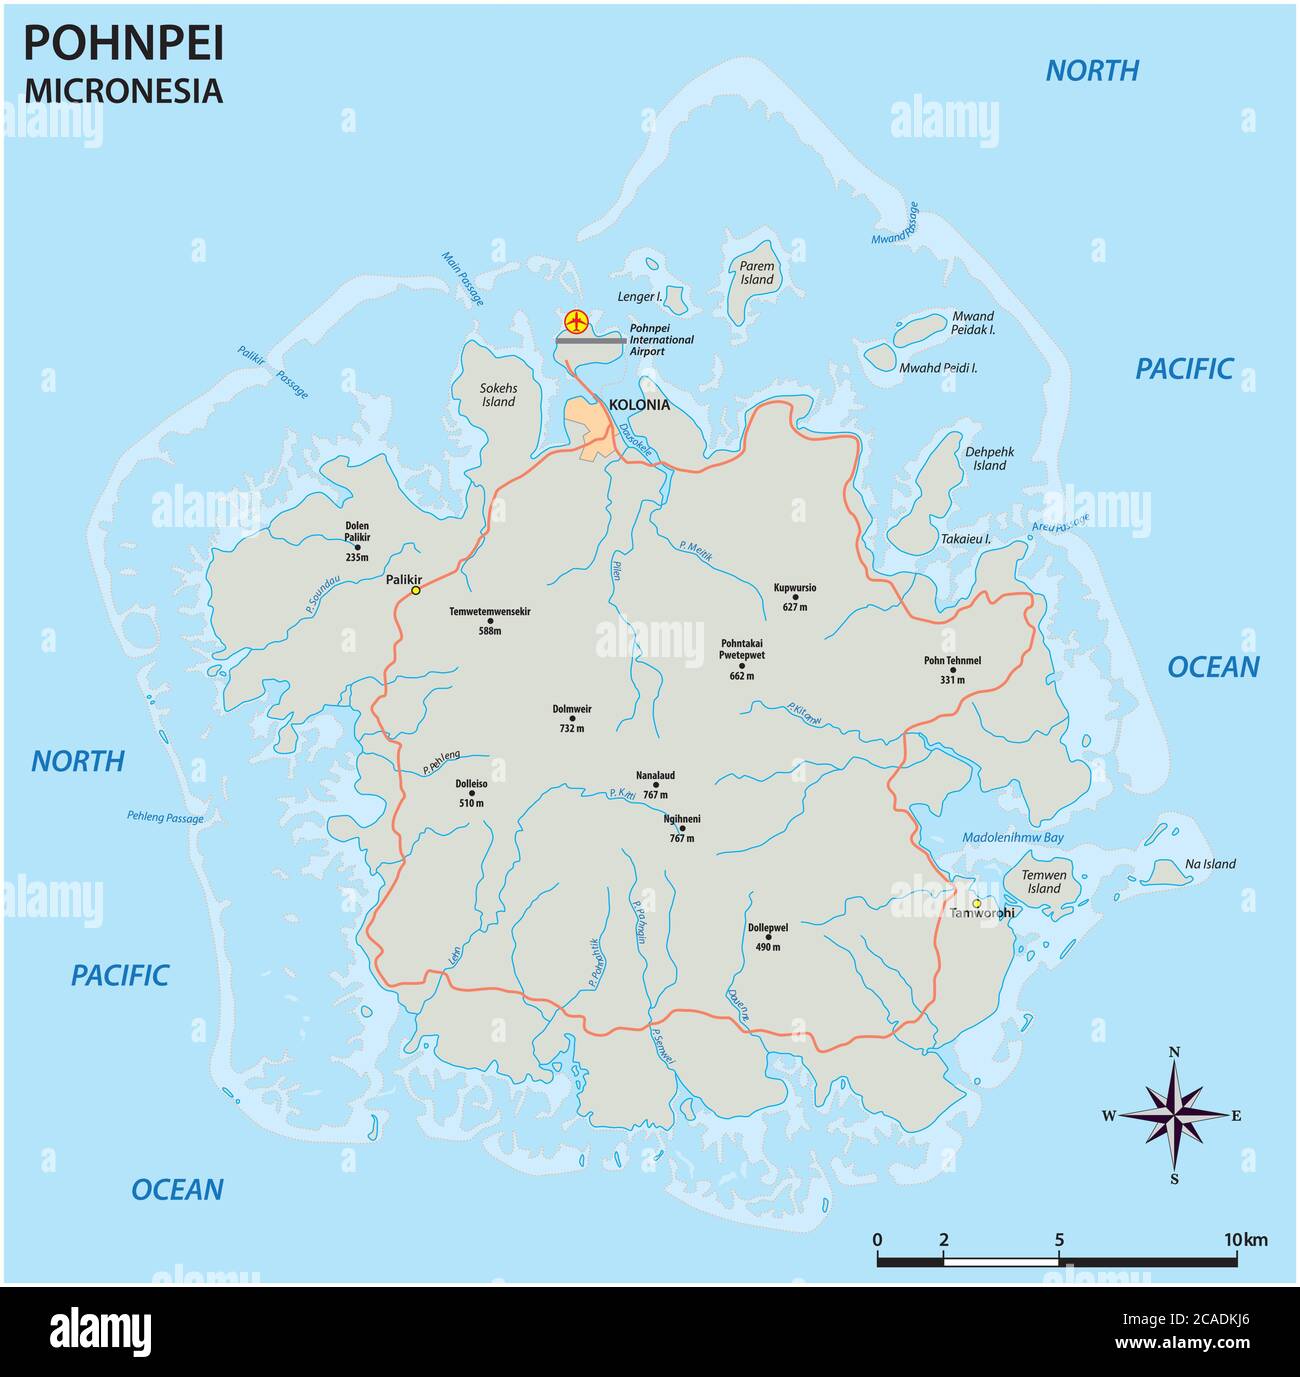 Mappa stradale vettoriale della principale isola micronesiana di Pohnpei Illustrazione Vettoriale